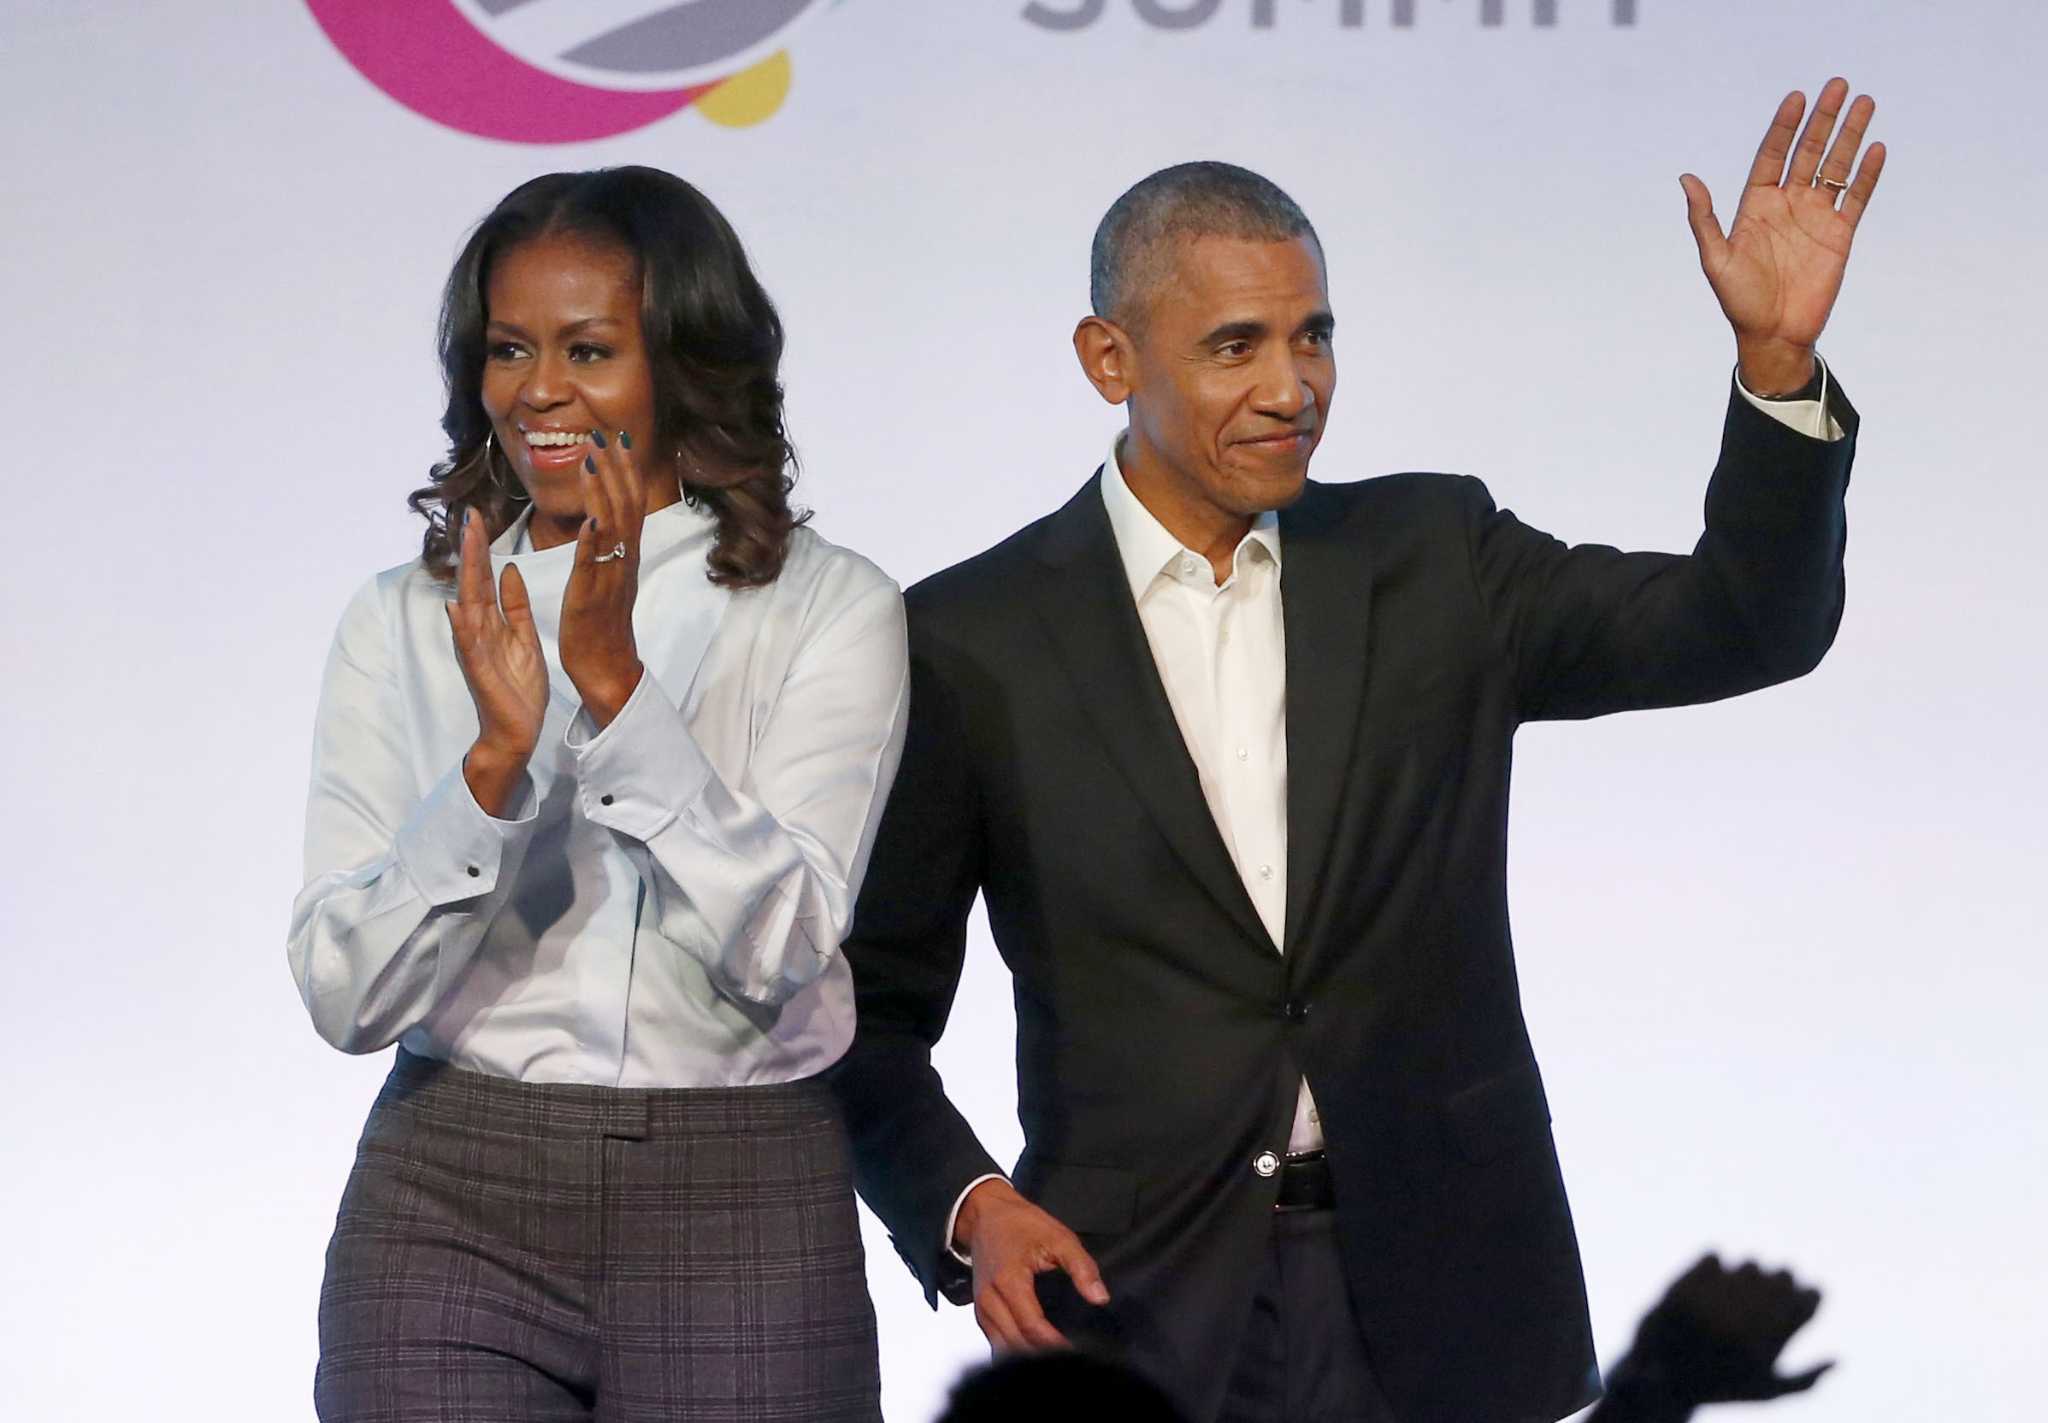 Obama transe michelle Michelle Obama